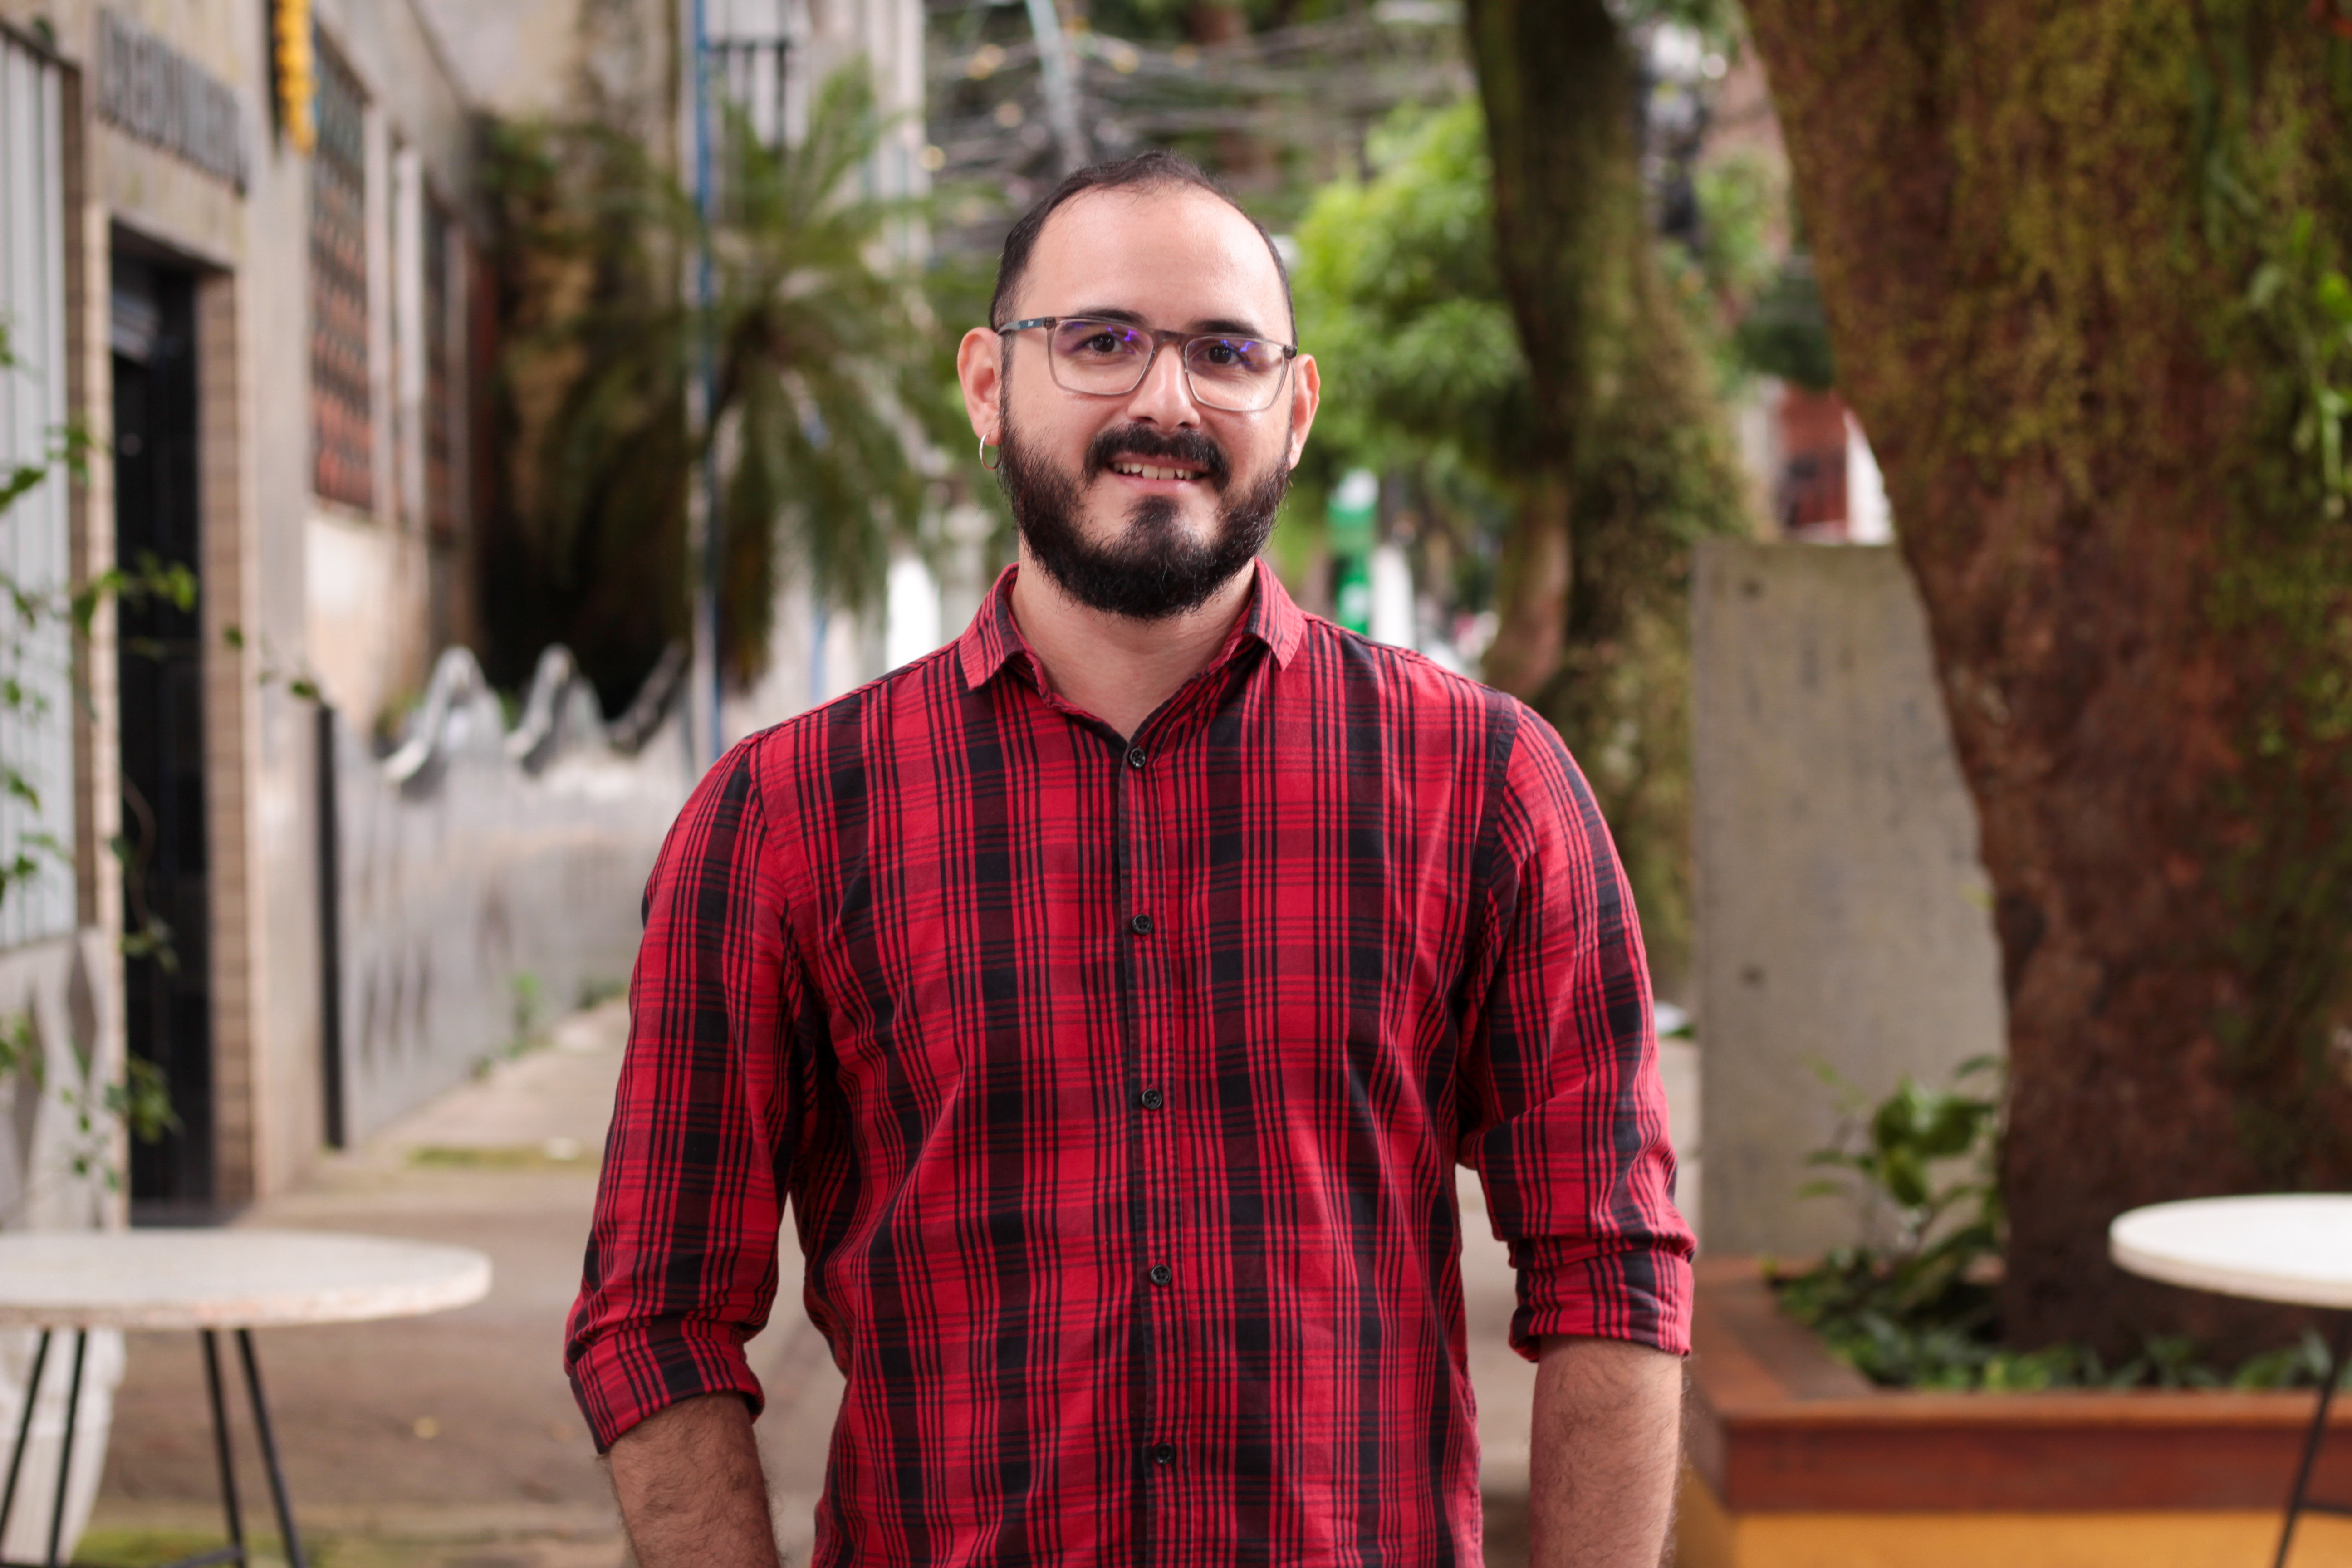 Além de coordenador de conteúdo do DOL, Enderson Oliveira é professor e doutorando em Antropologia